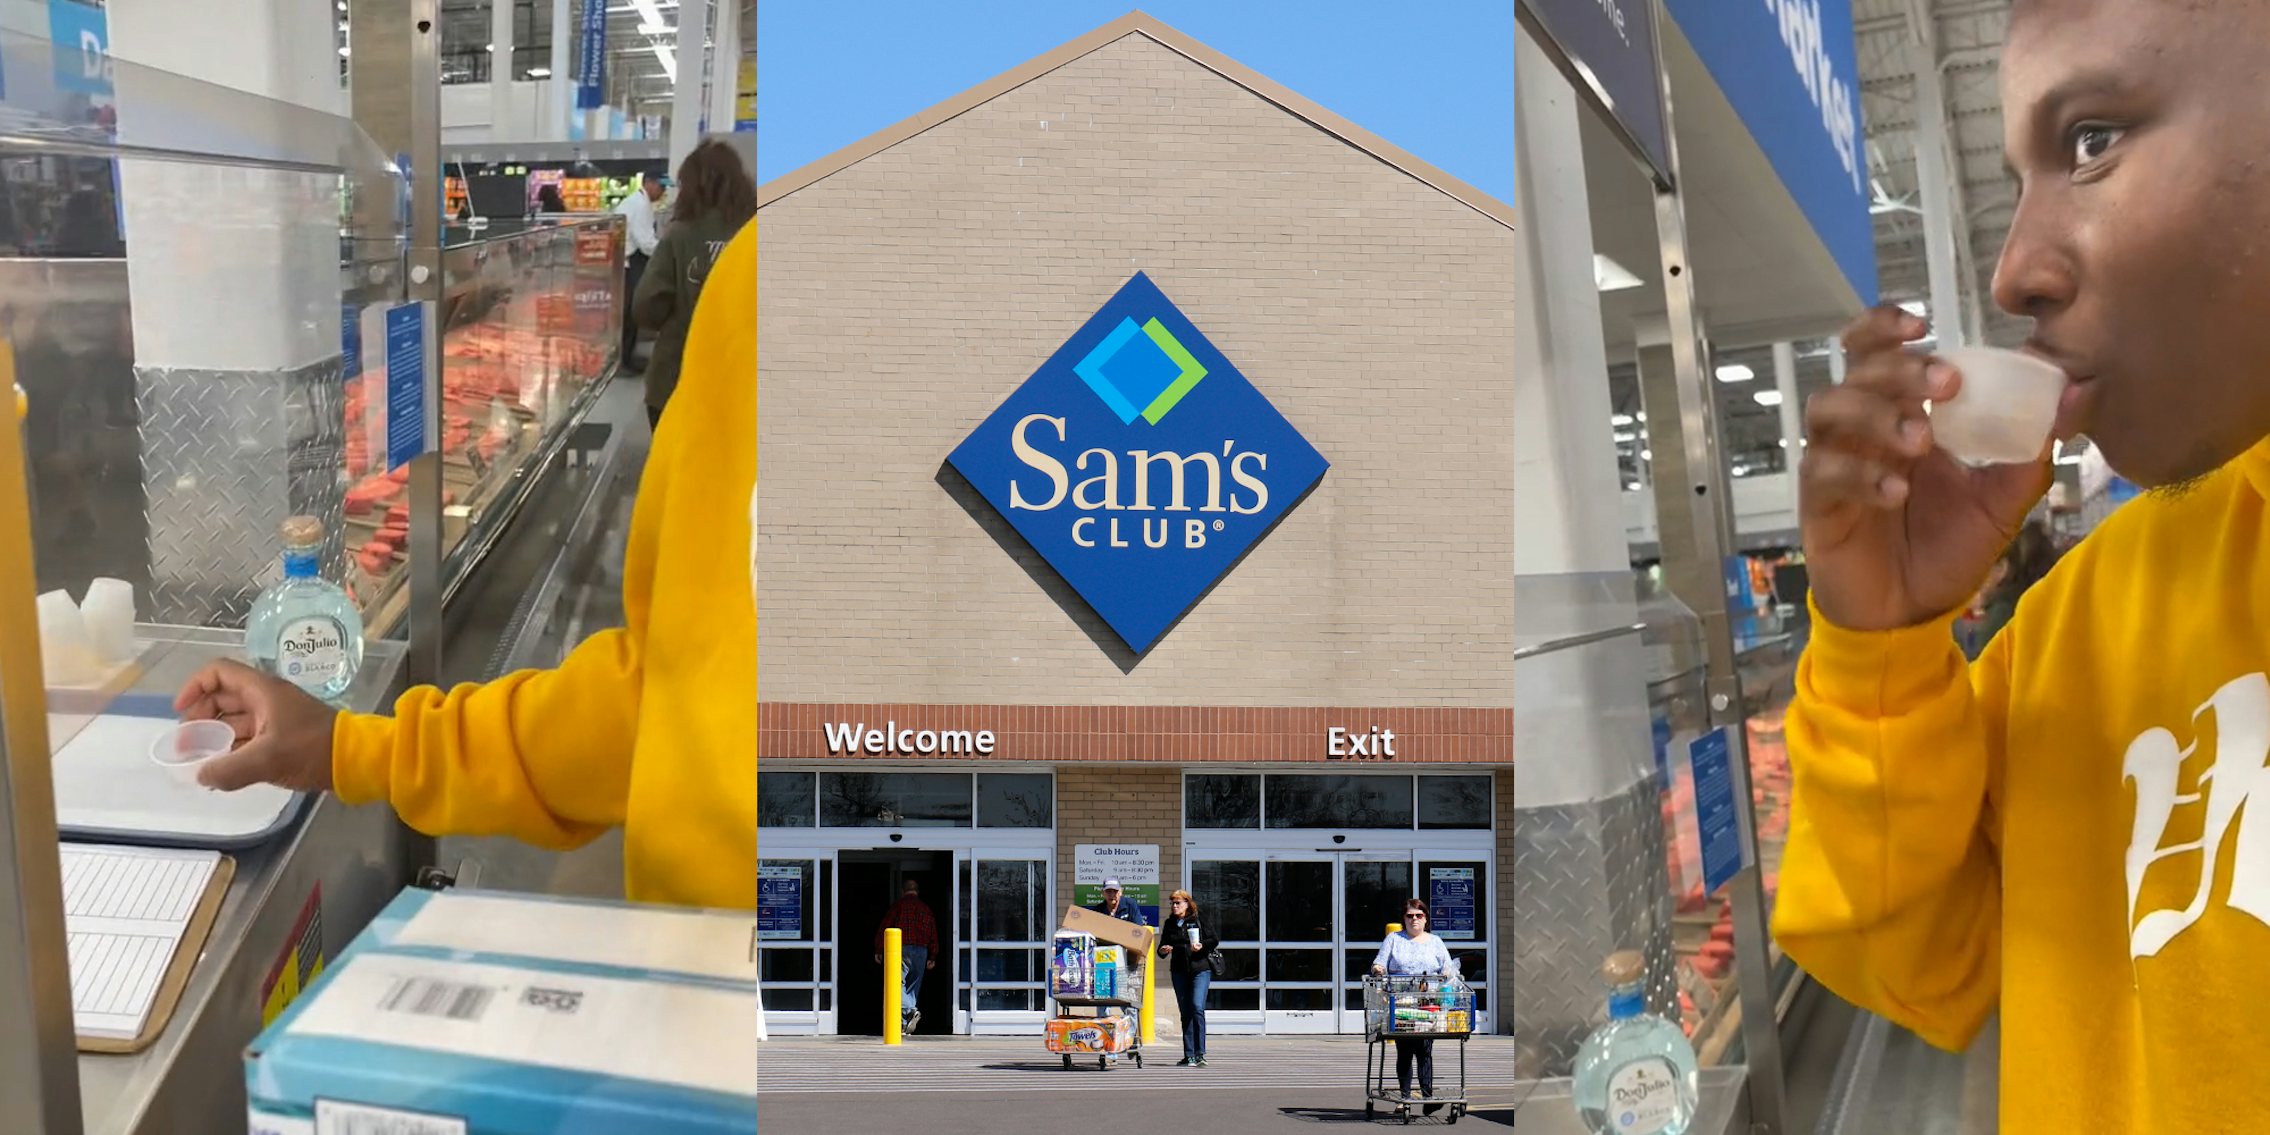 Sam's Club customer holding free shot (l) Sam's Club building with sign (c) Sam's Club customer taking shot (r)